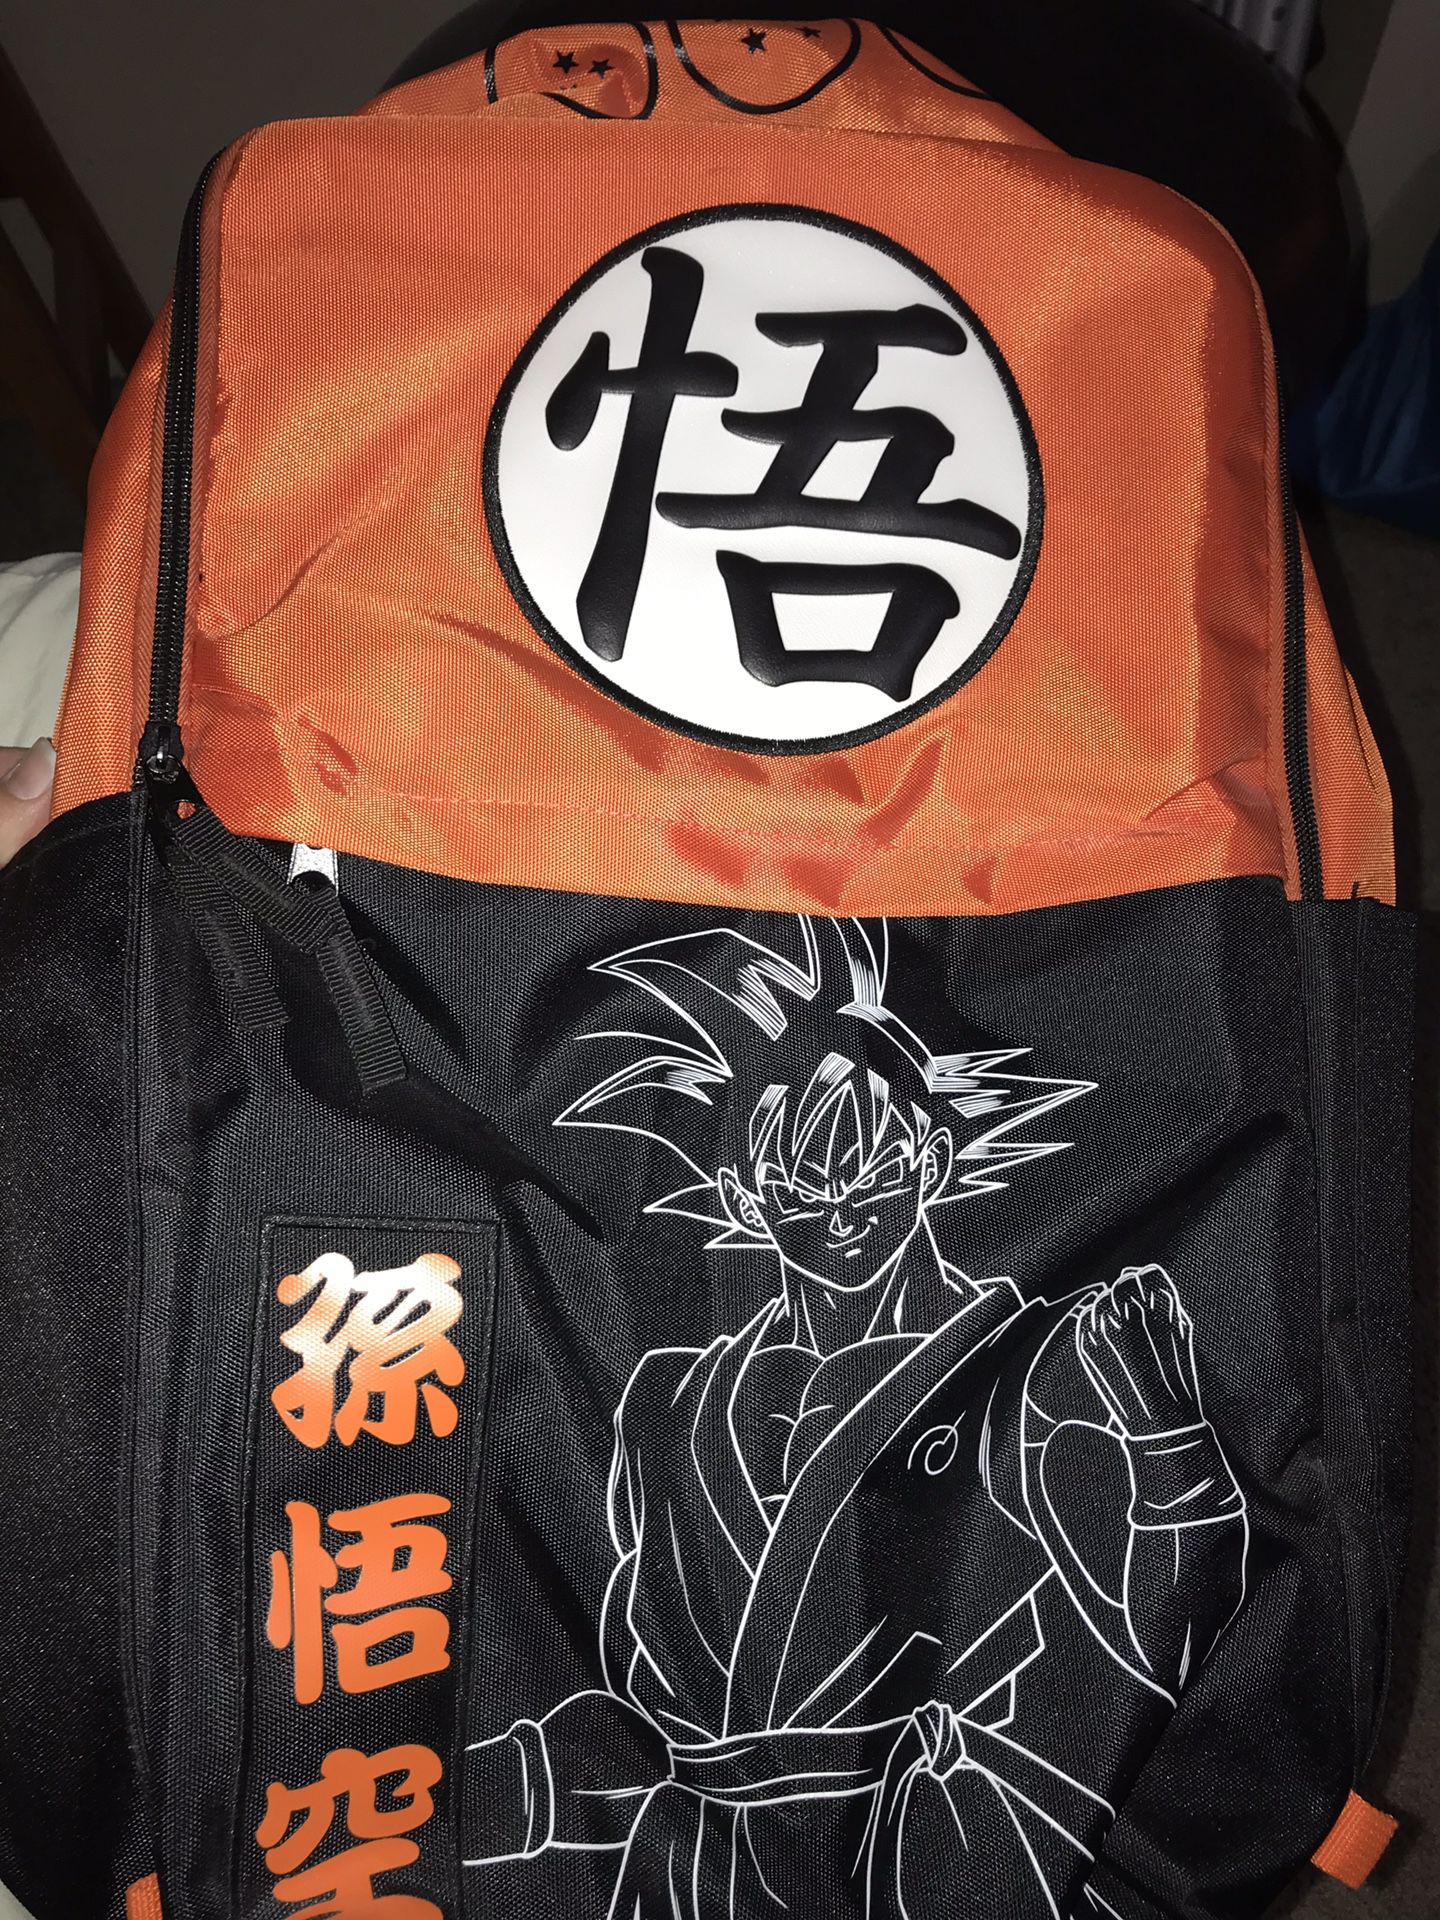 Goku backpack